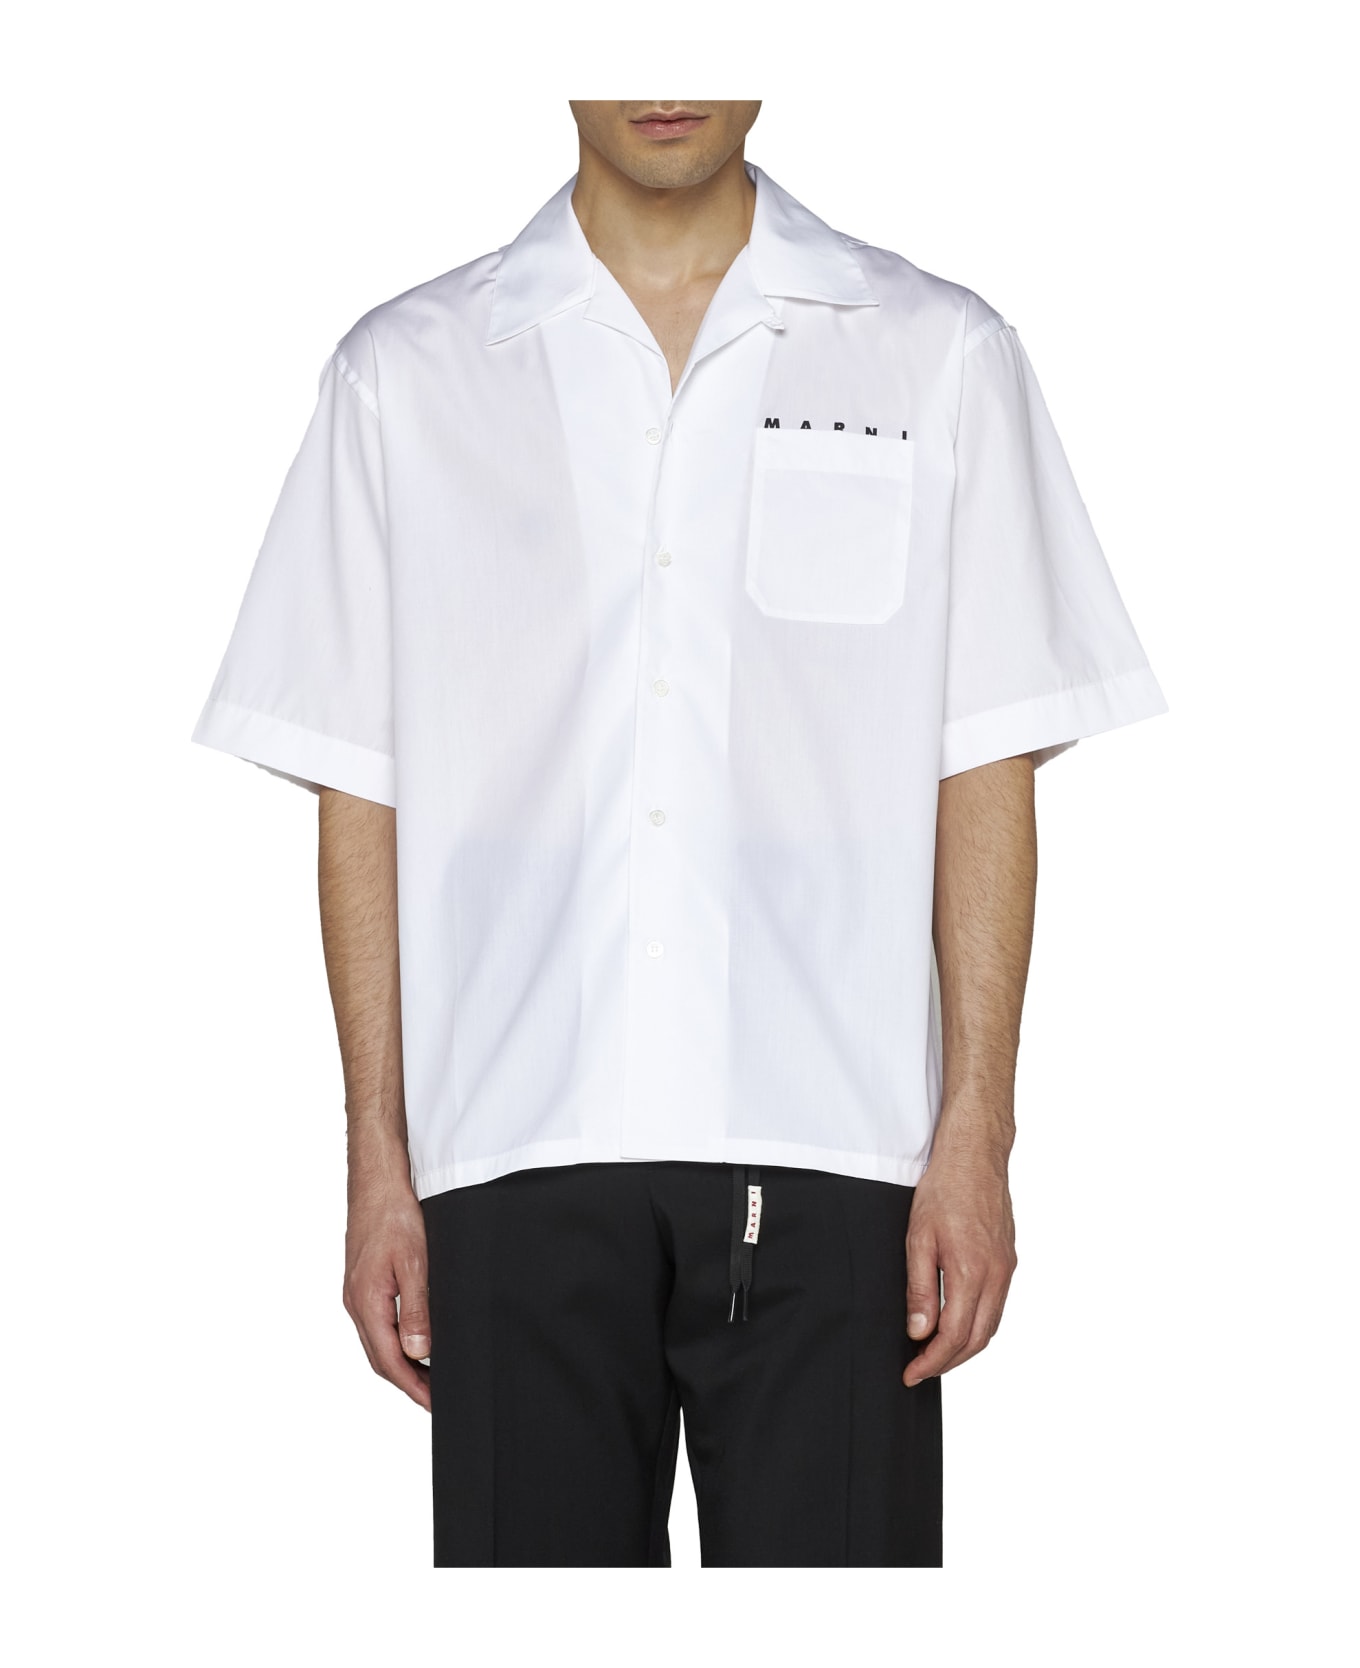 Marni Shirt - Lily white